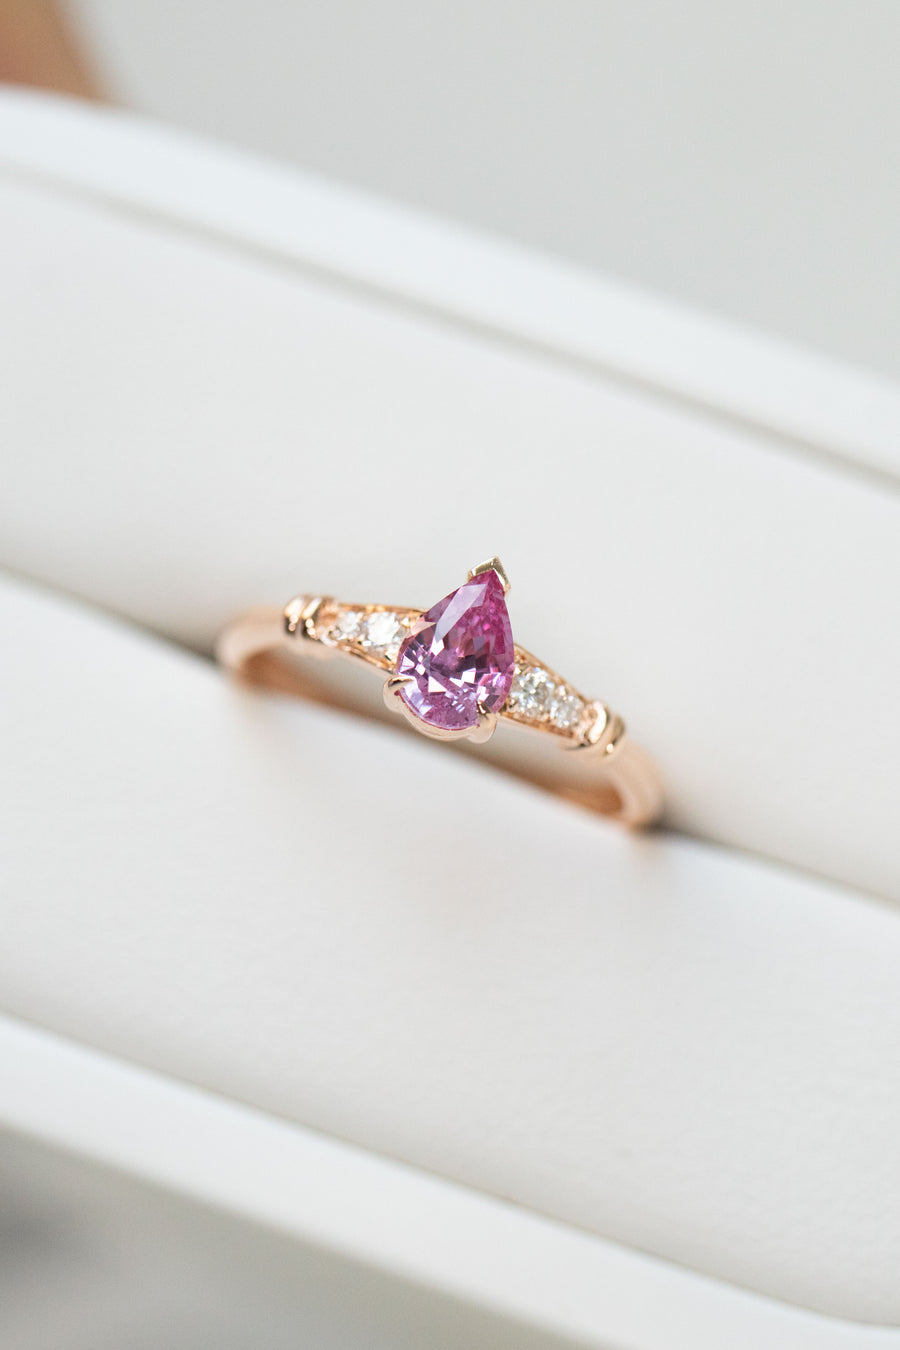 0.45carat Pear Pink Sapphire & total 0.06carat Diamonds 18K Rose Gold Ring